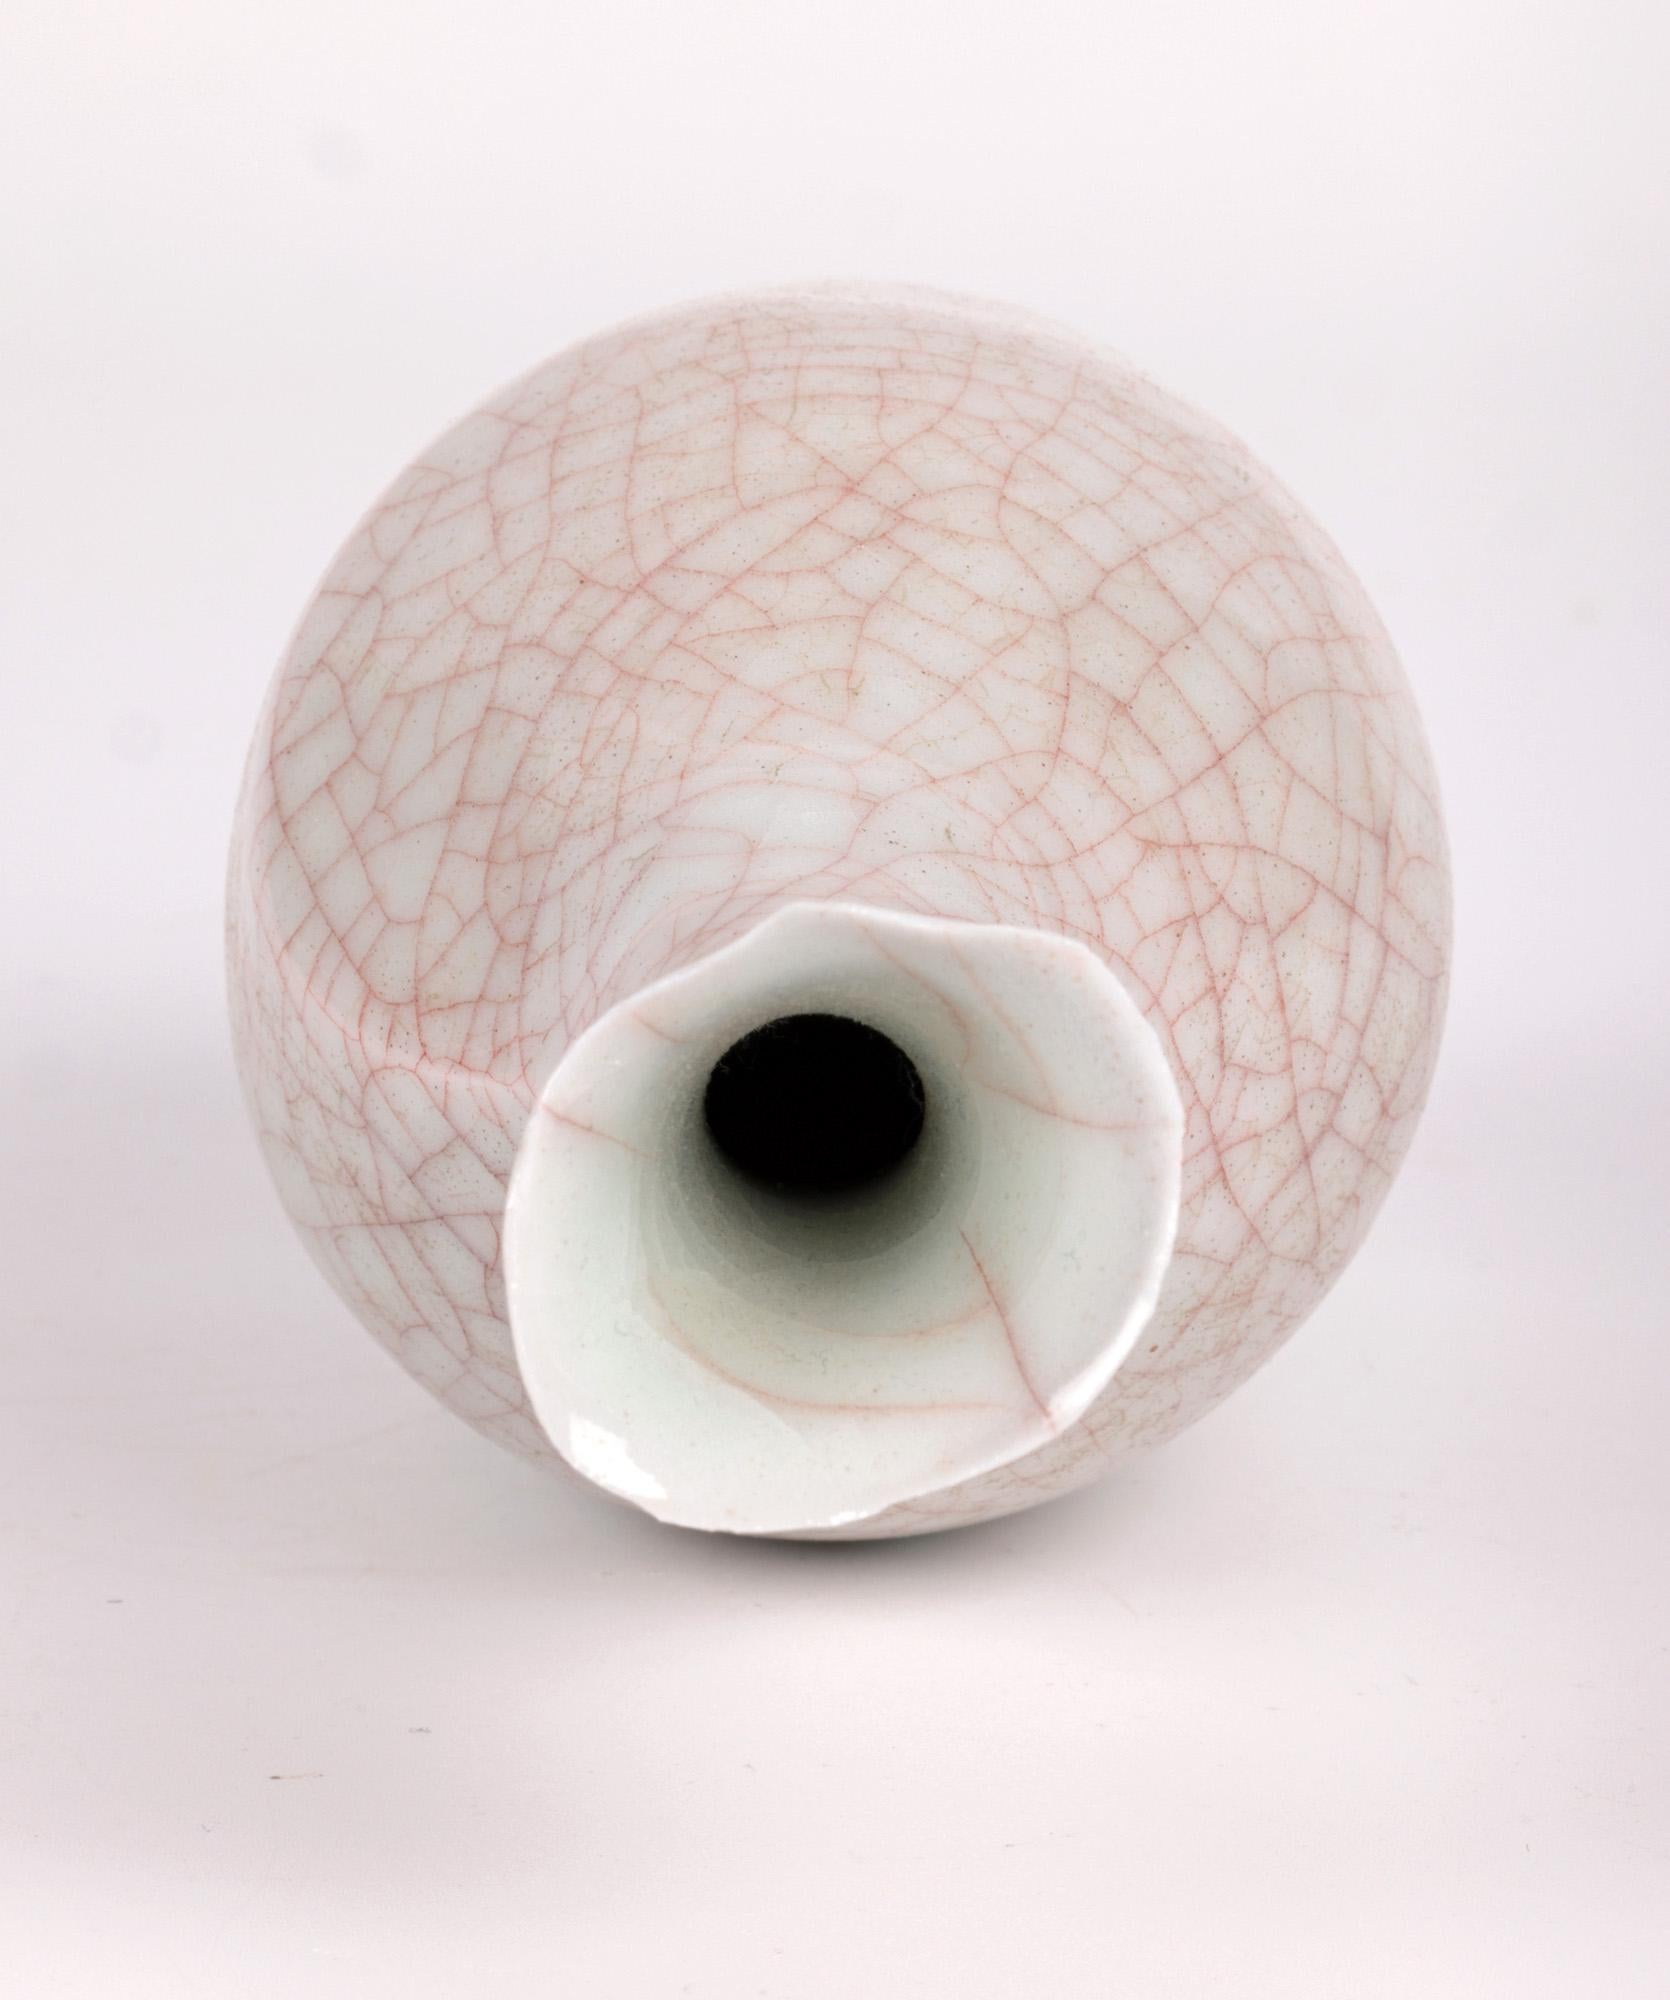 Sonia Lewis Studio Ceramic Craquelure Glazed Bottle Vase For Sale 4